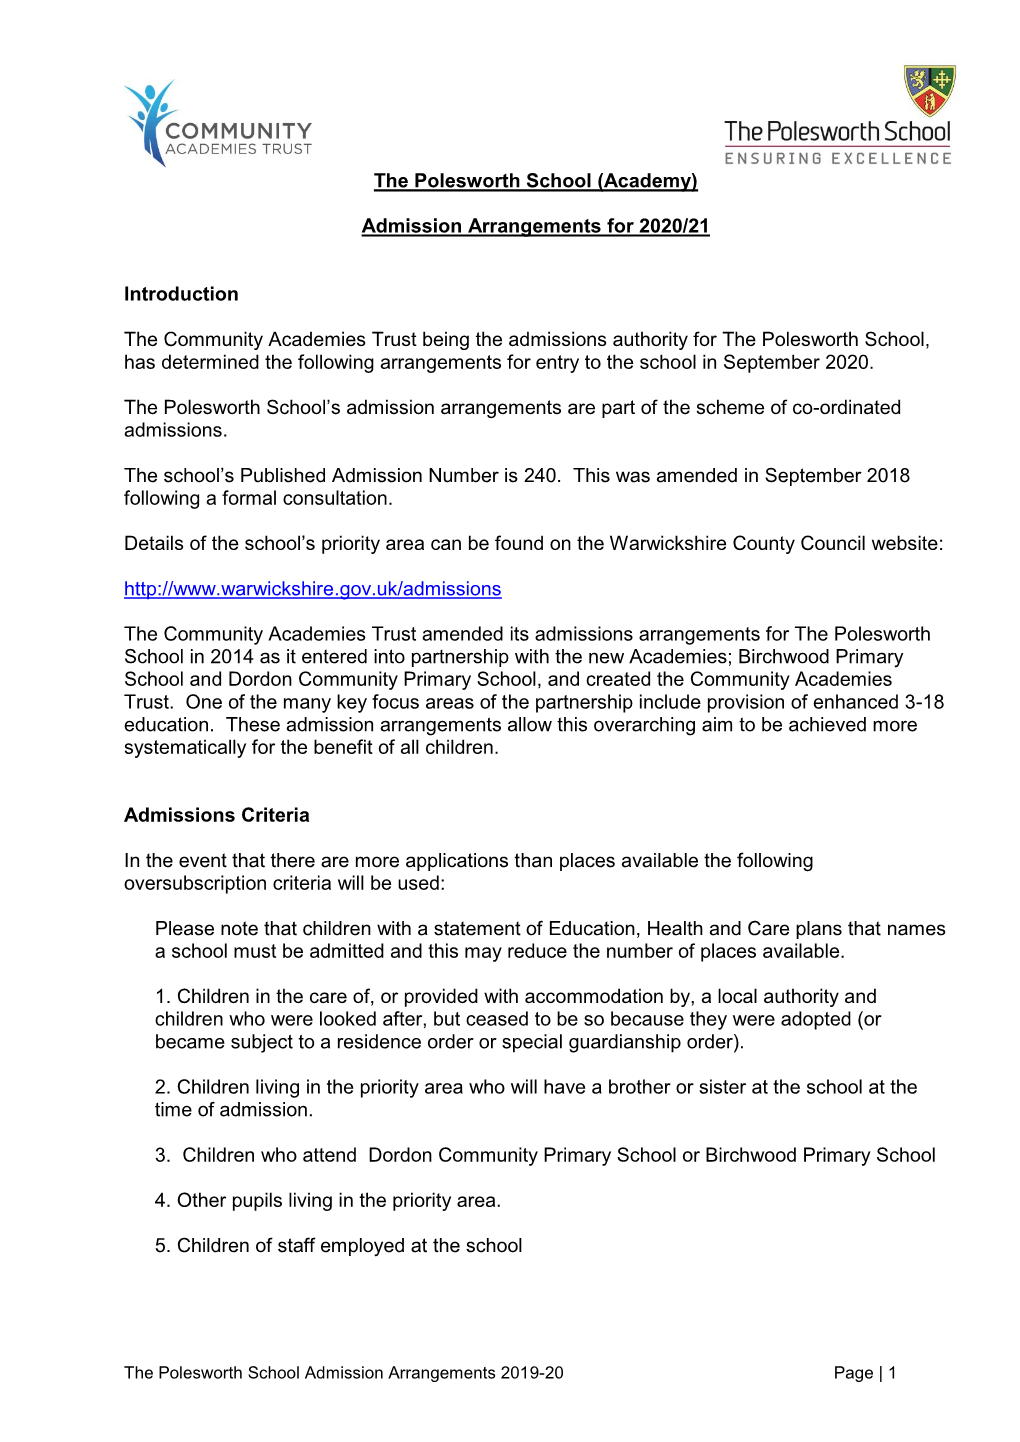 Admission Arrangements 2020-21